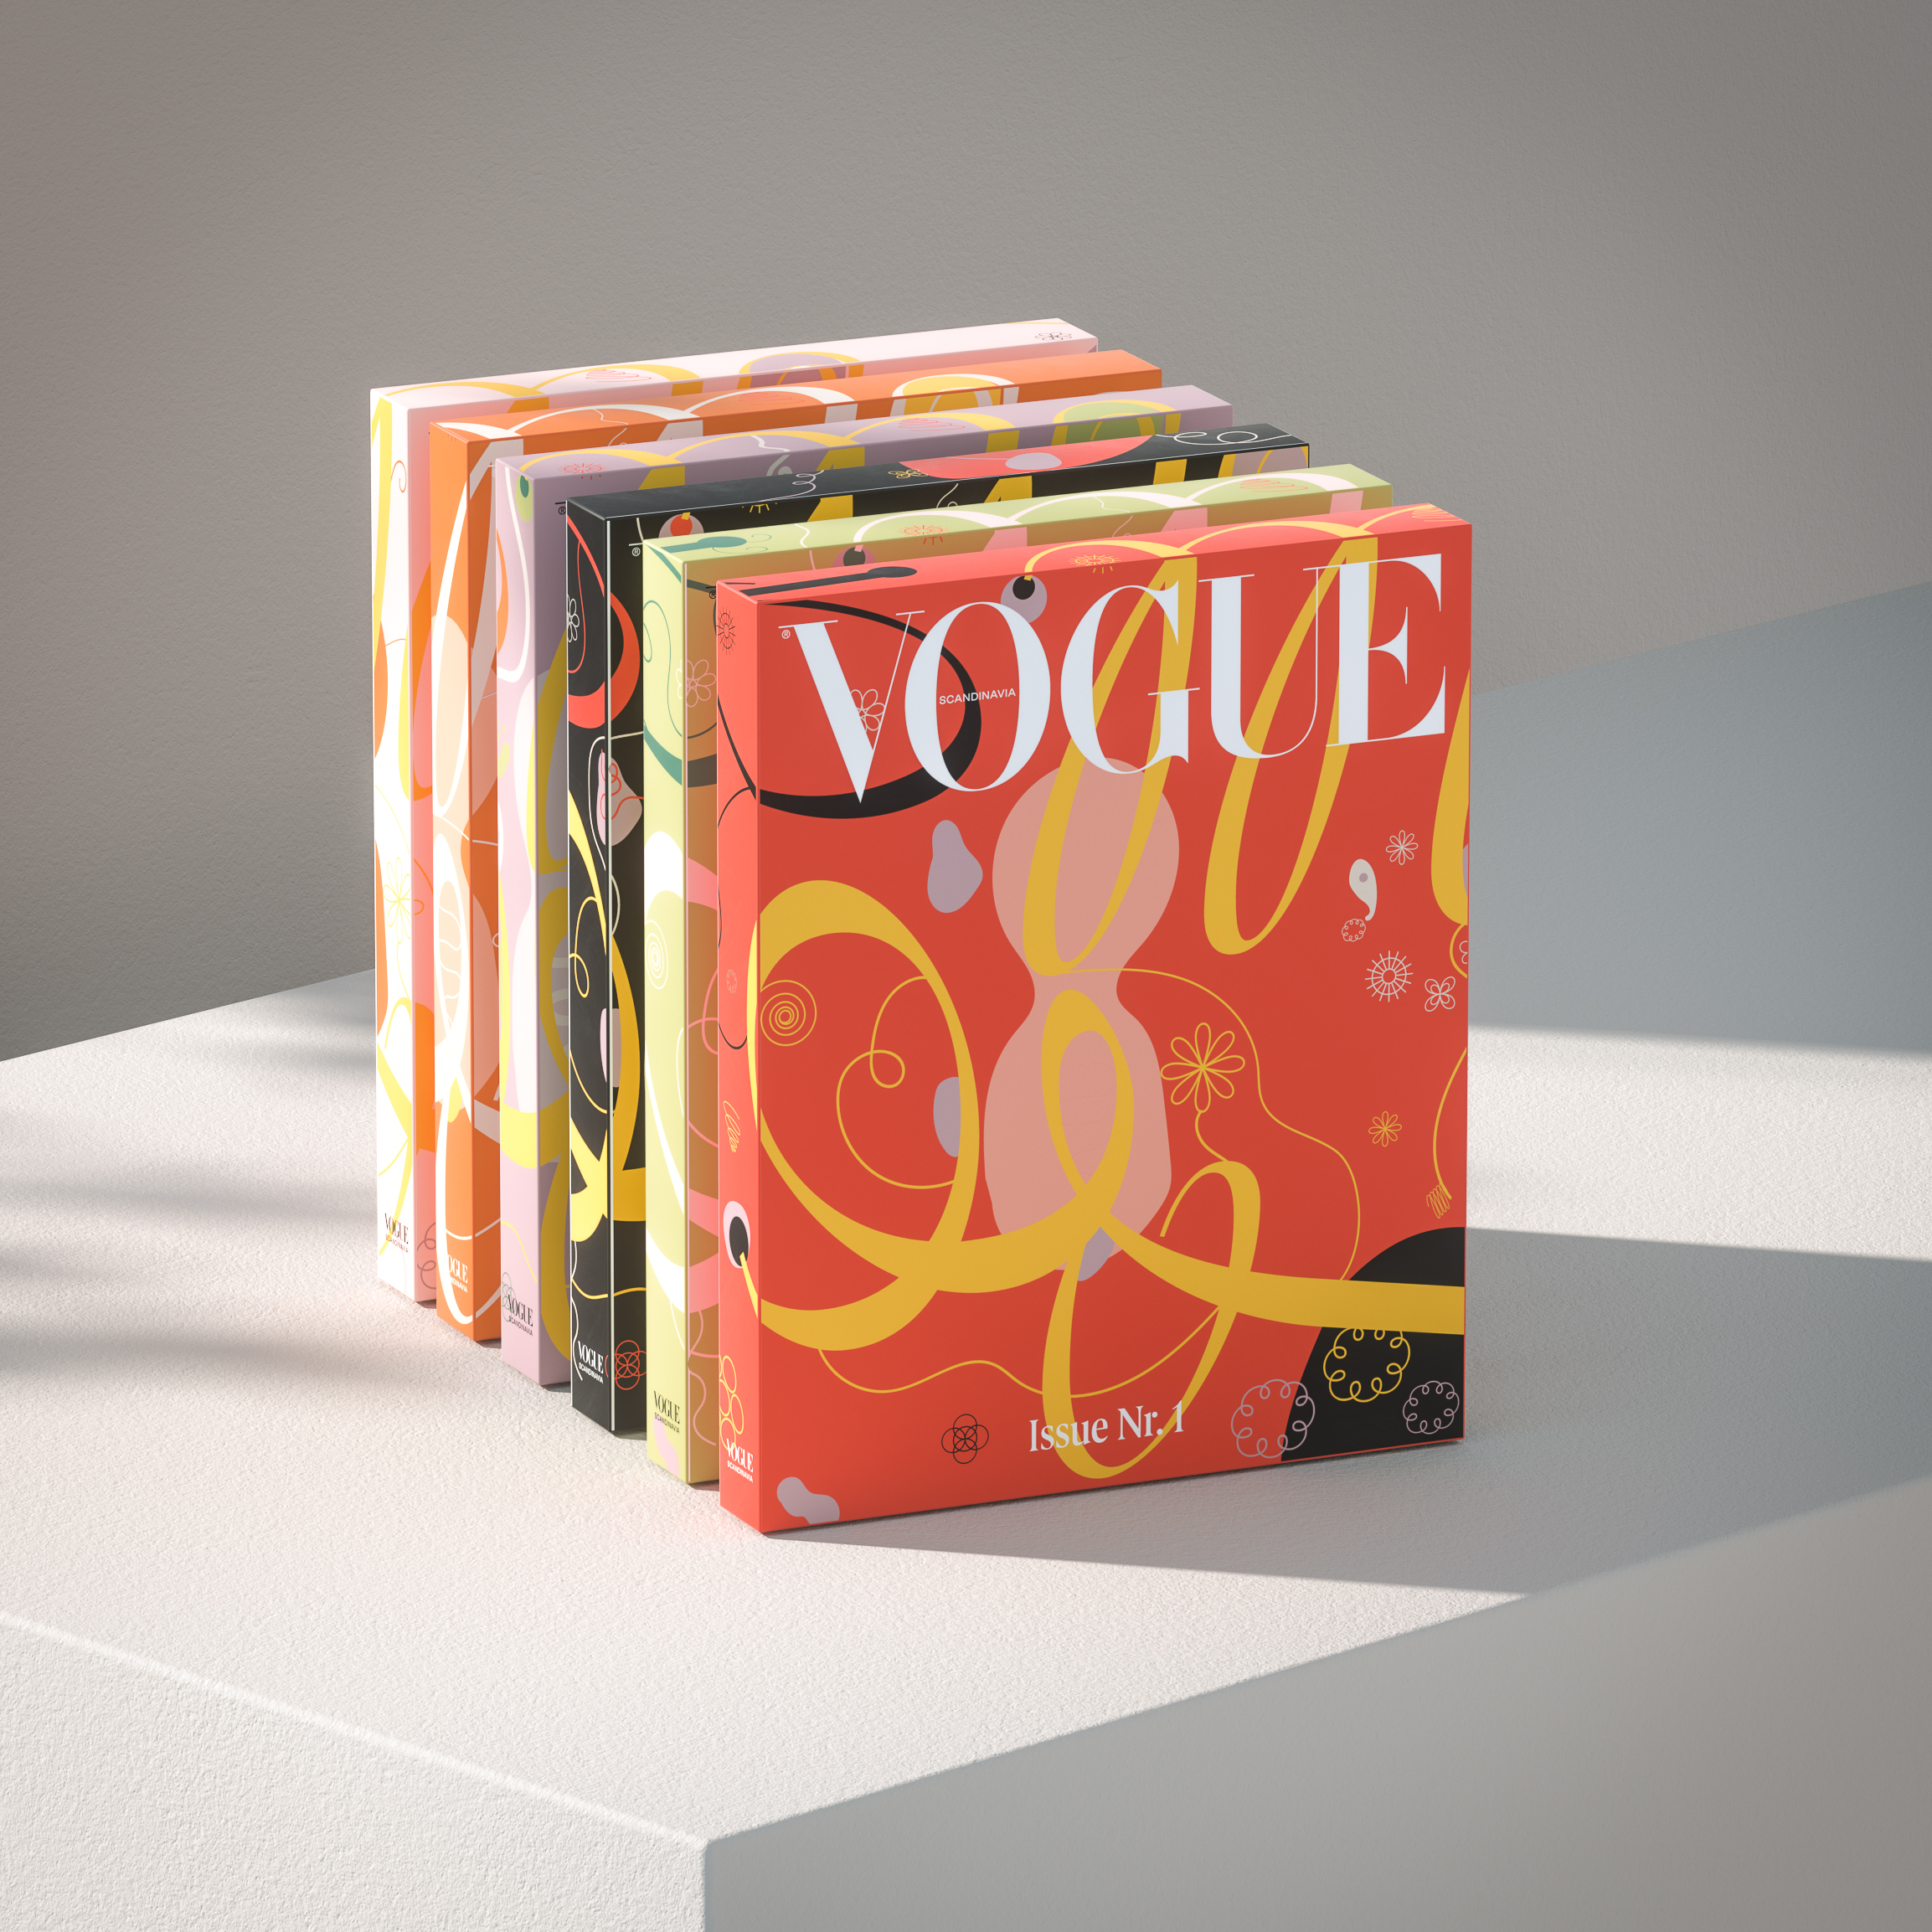 Как создать самый экологичный журнал в мире &- рассказывает главный редактор скандинавского Vogue